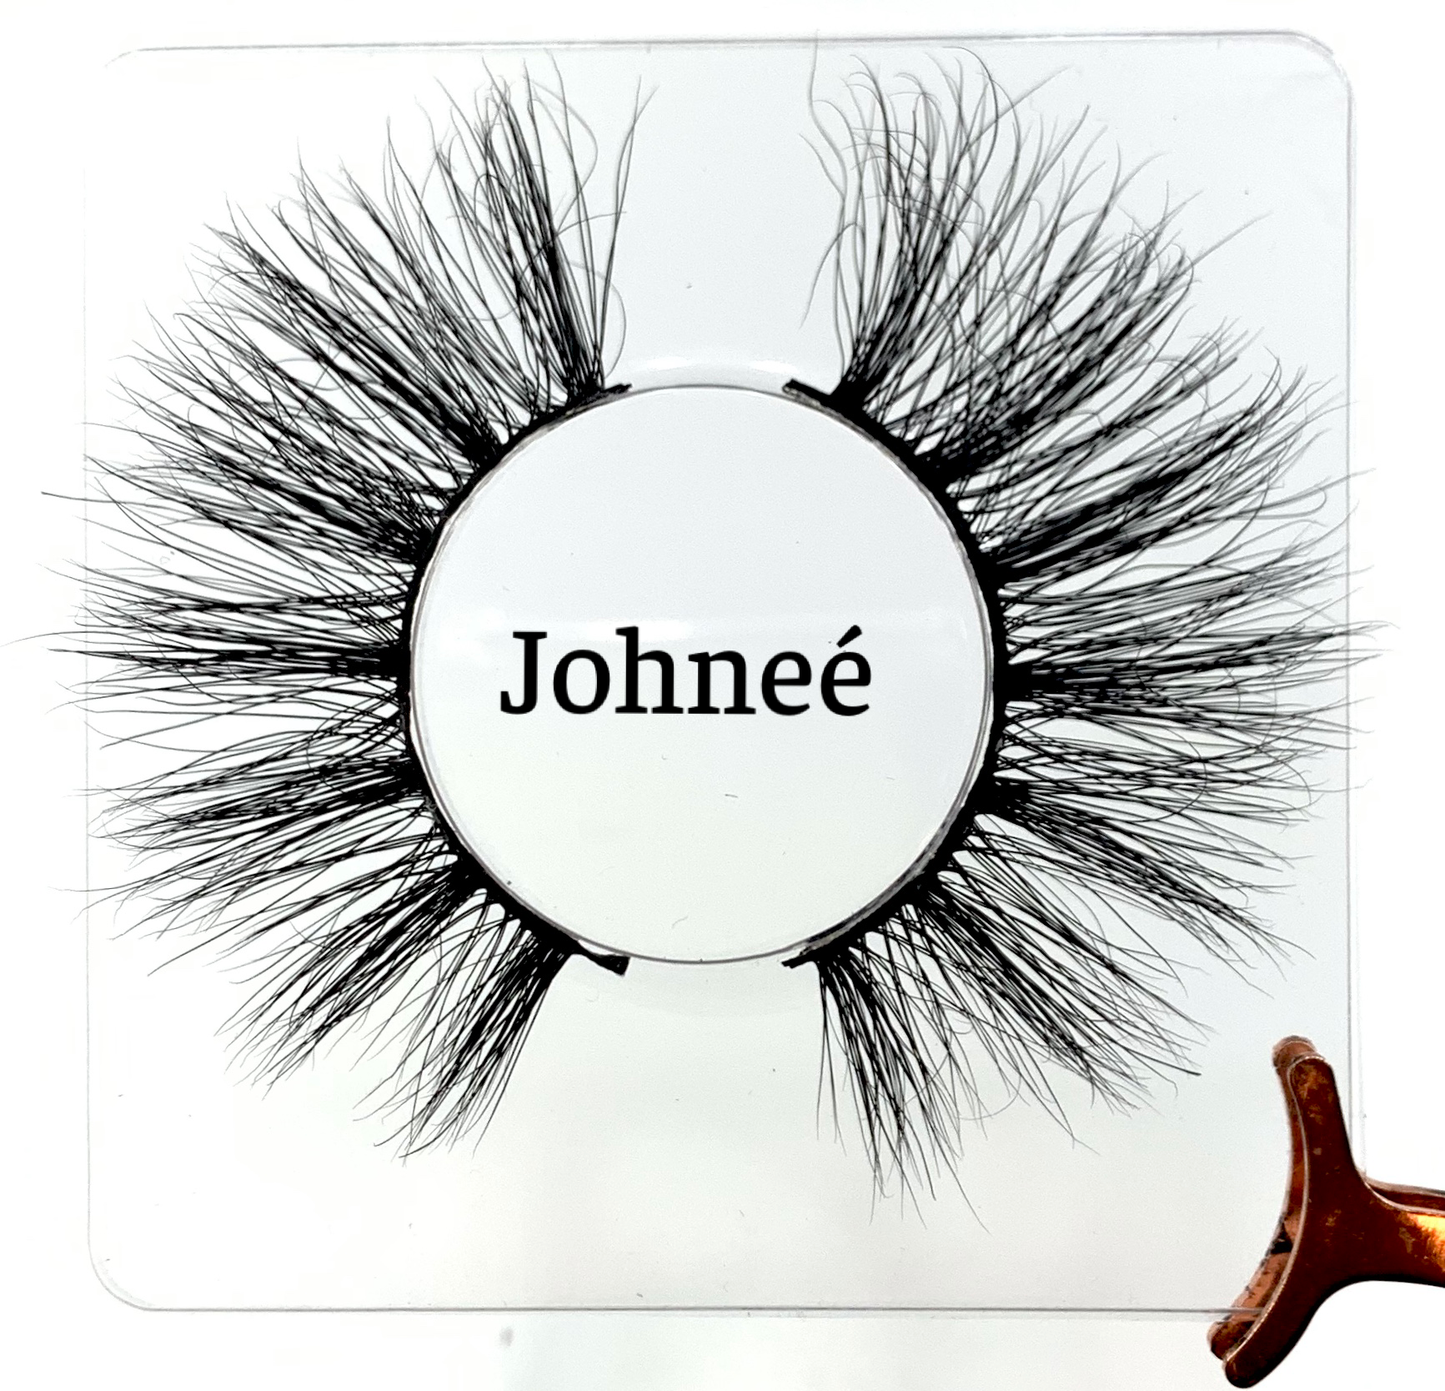 Johneé